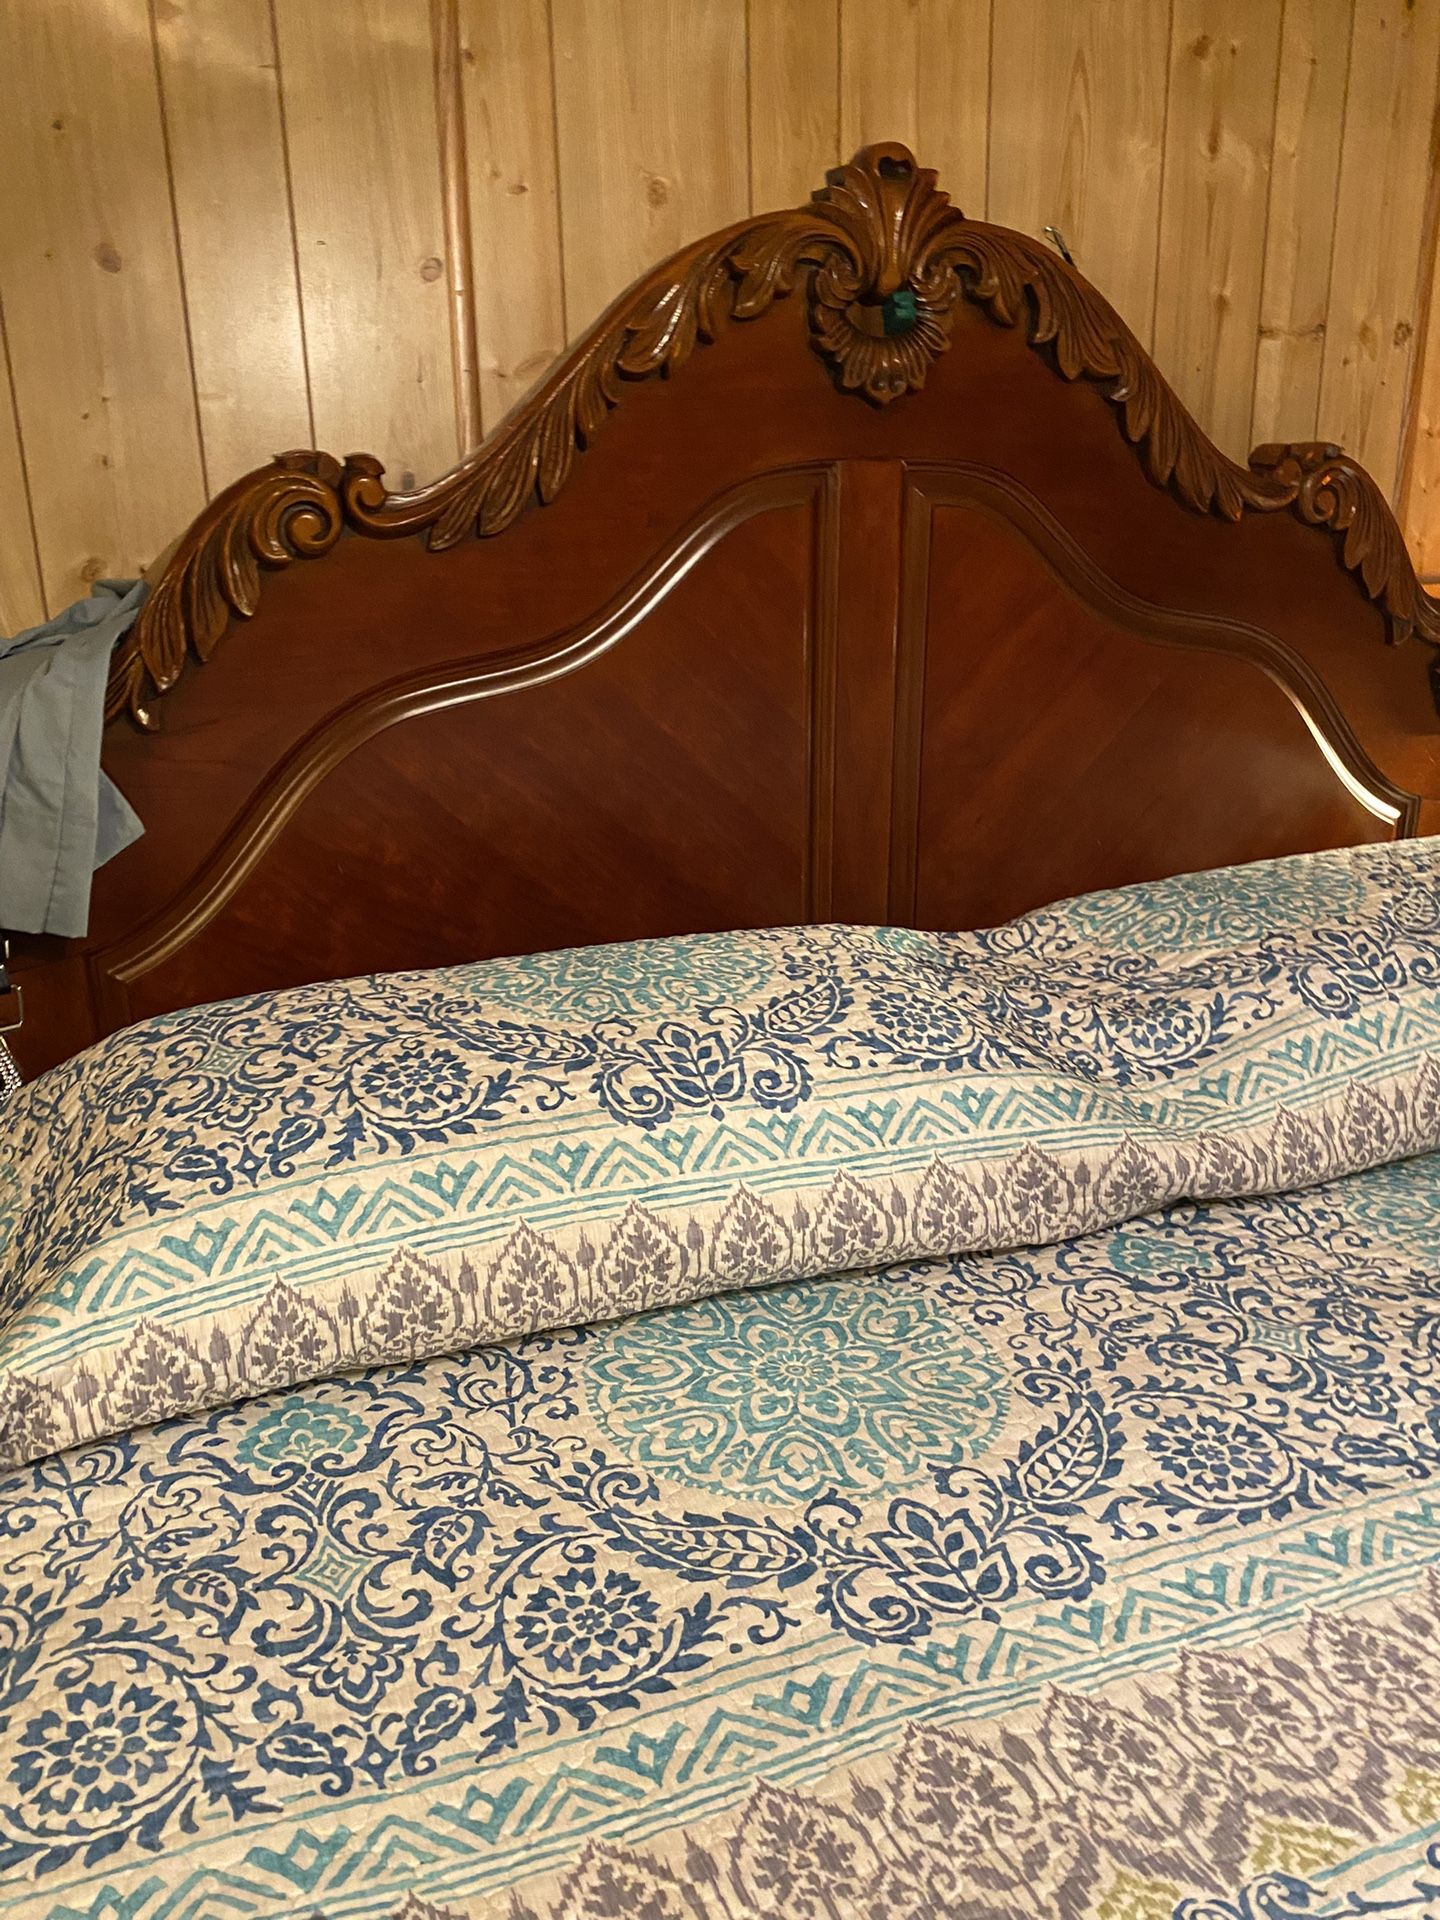 King Size Bed With Serta Massage Mattress 